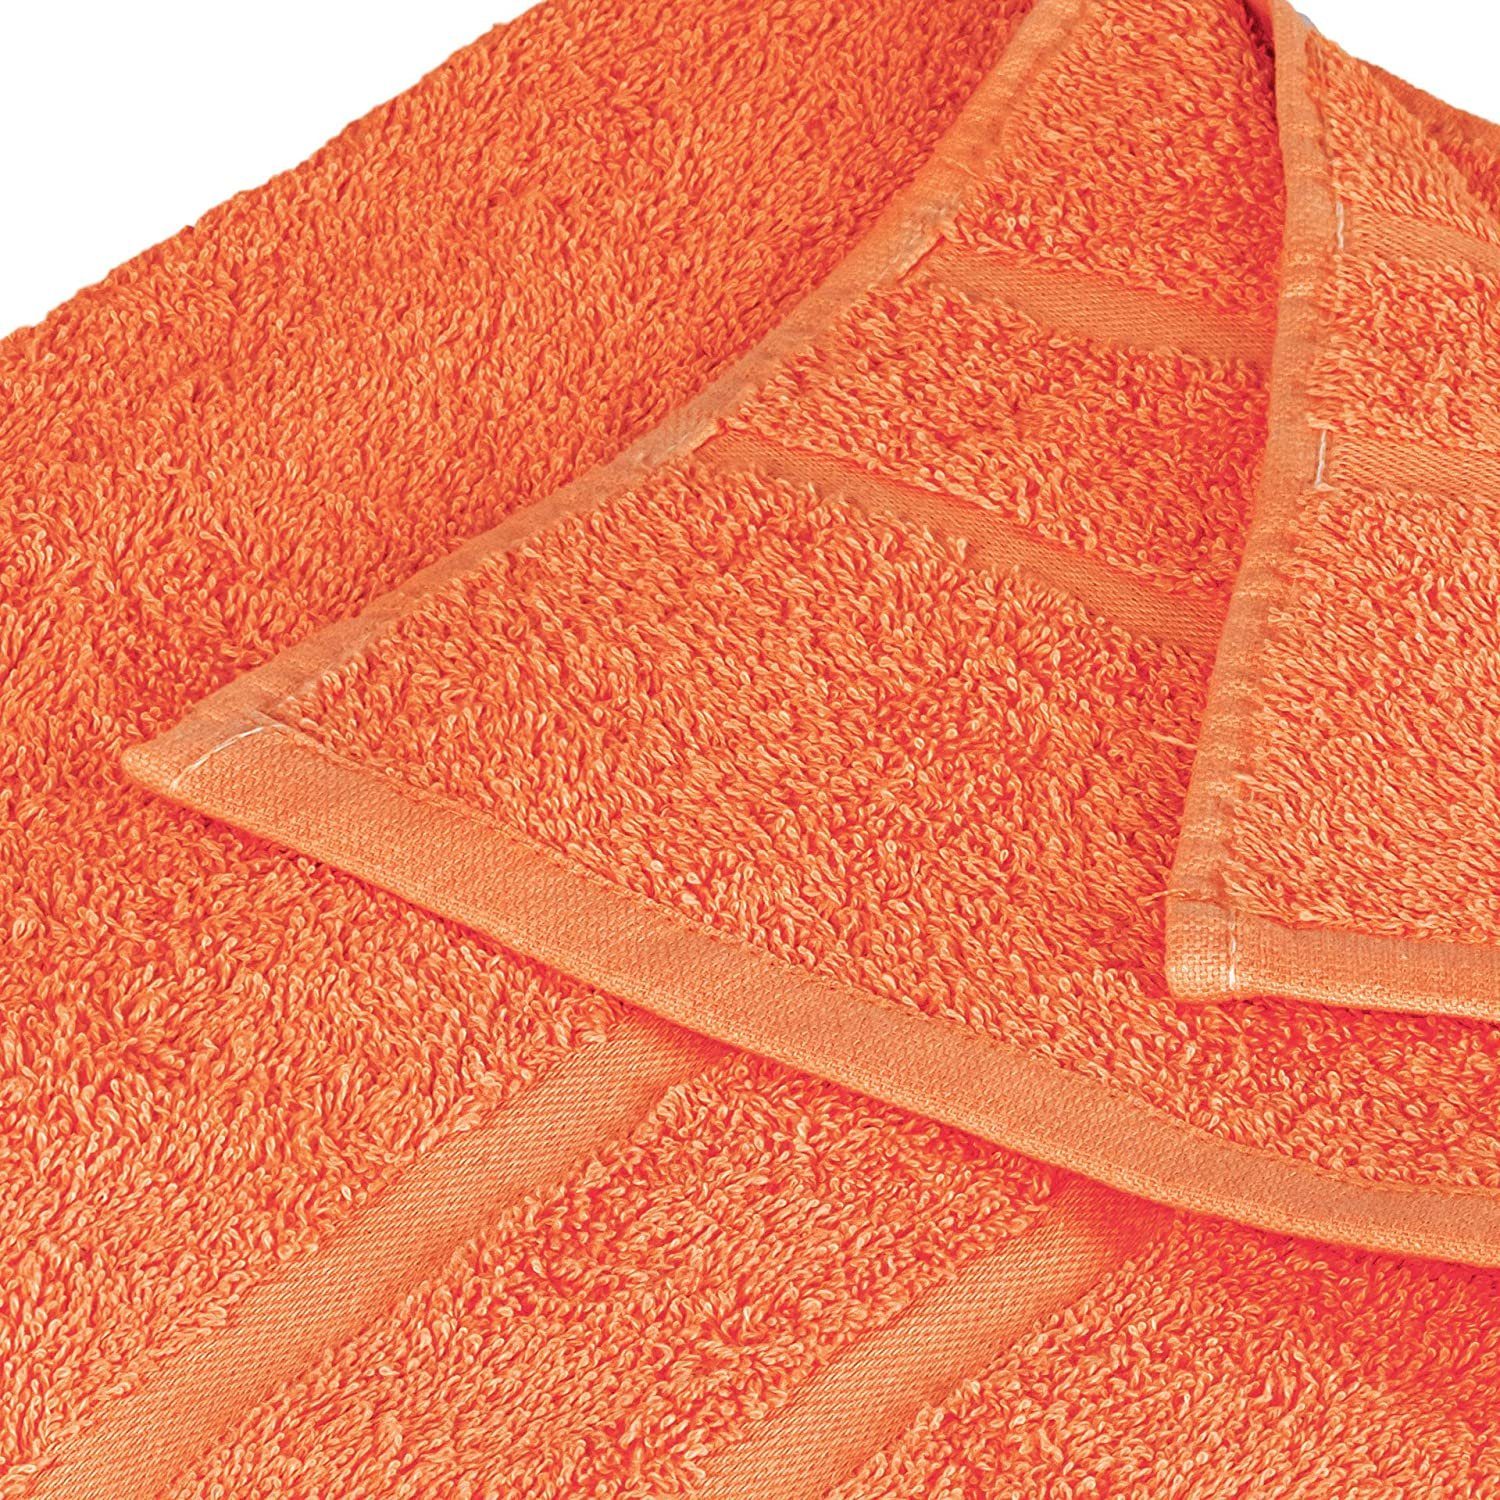 Teilig) Handtuch (8 GSM Gästehandtuch 4x 8er als Orange 4x Baumwolle SET Frottee Handtuch Set 500 GSM 100% 500 Farben Pack, in Handtücher 100% verschiedenen StickandShine Baumwolle